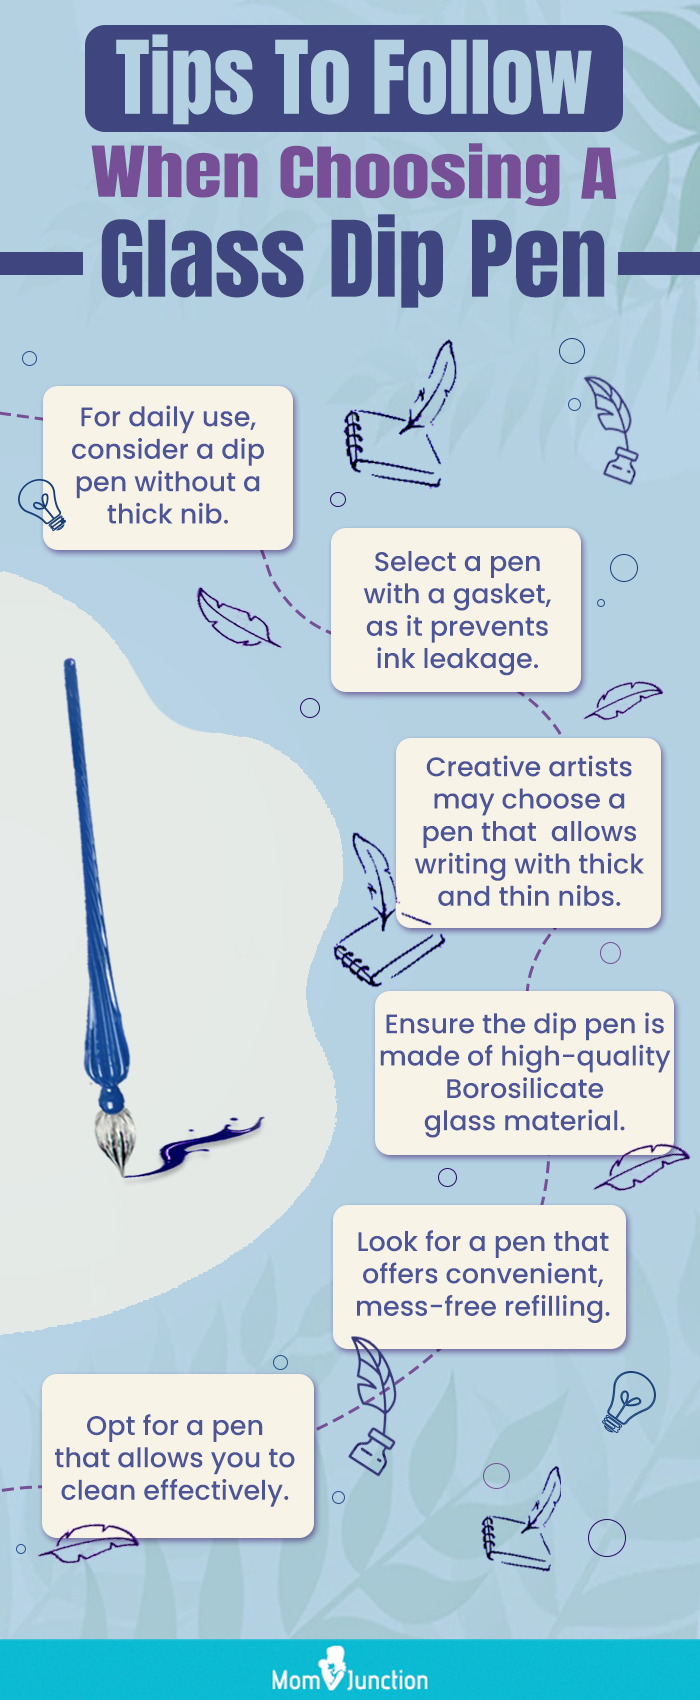 https://cdn2.momjunction.com/wp-content/uploads/2023/02/Tips-To-Follow-When-Choosing-A-Glass-Dip-Pen00.jpg